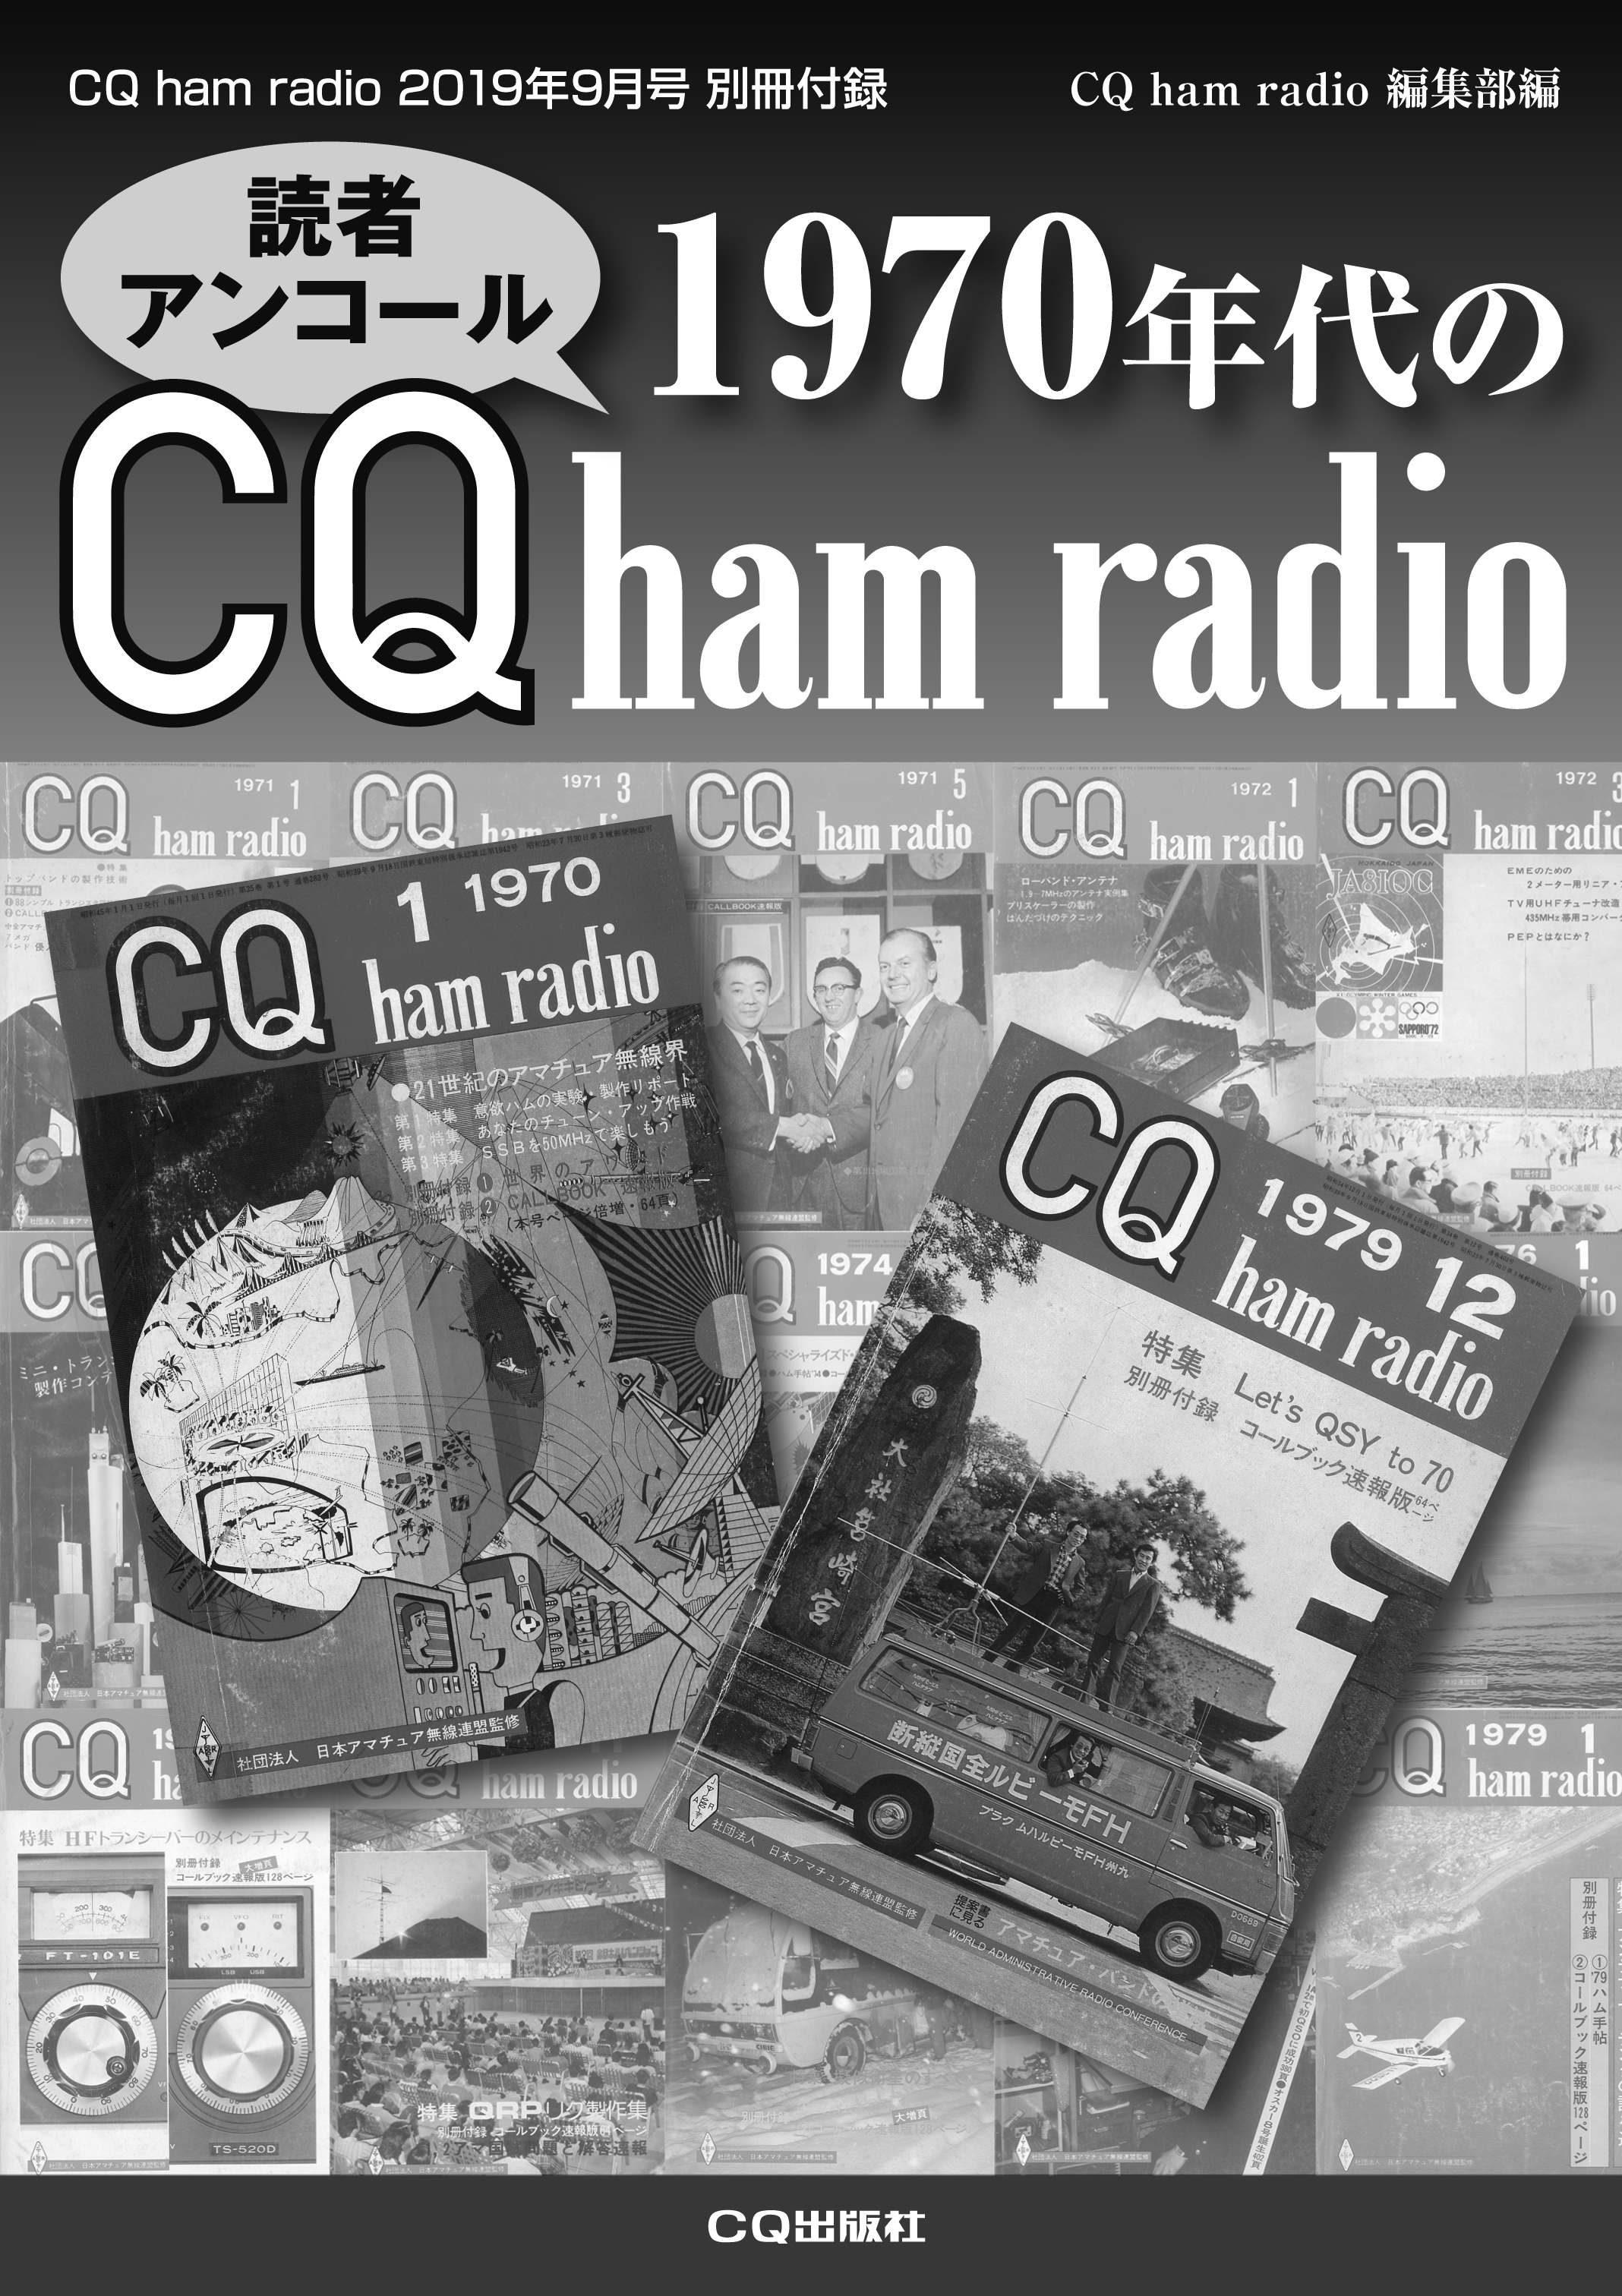 9月号別冊付録「1970年代のCQ ham radio」への投稿＆リクエスト募集!!